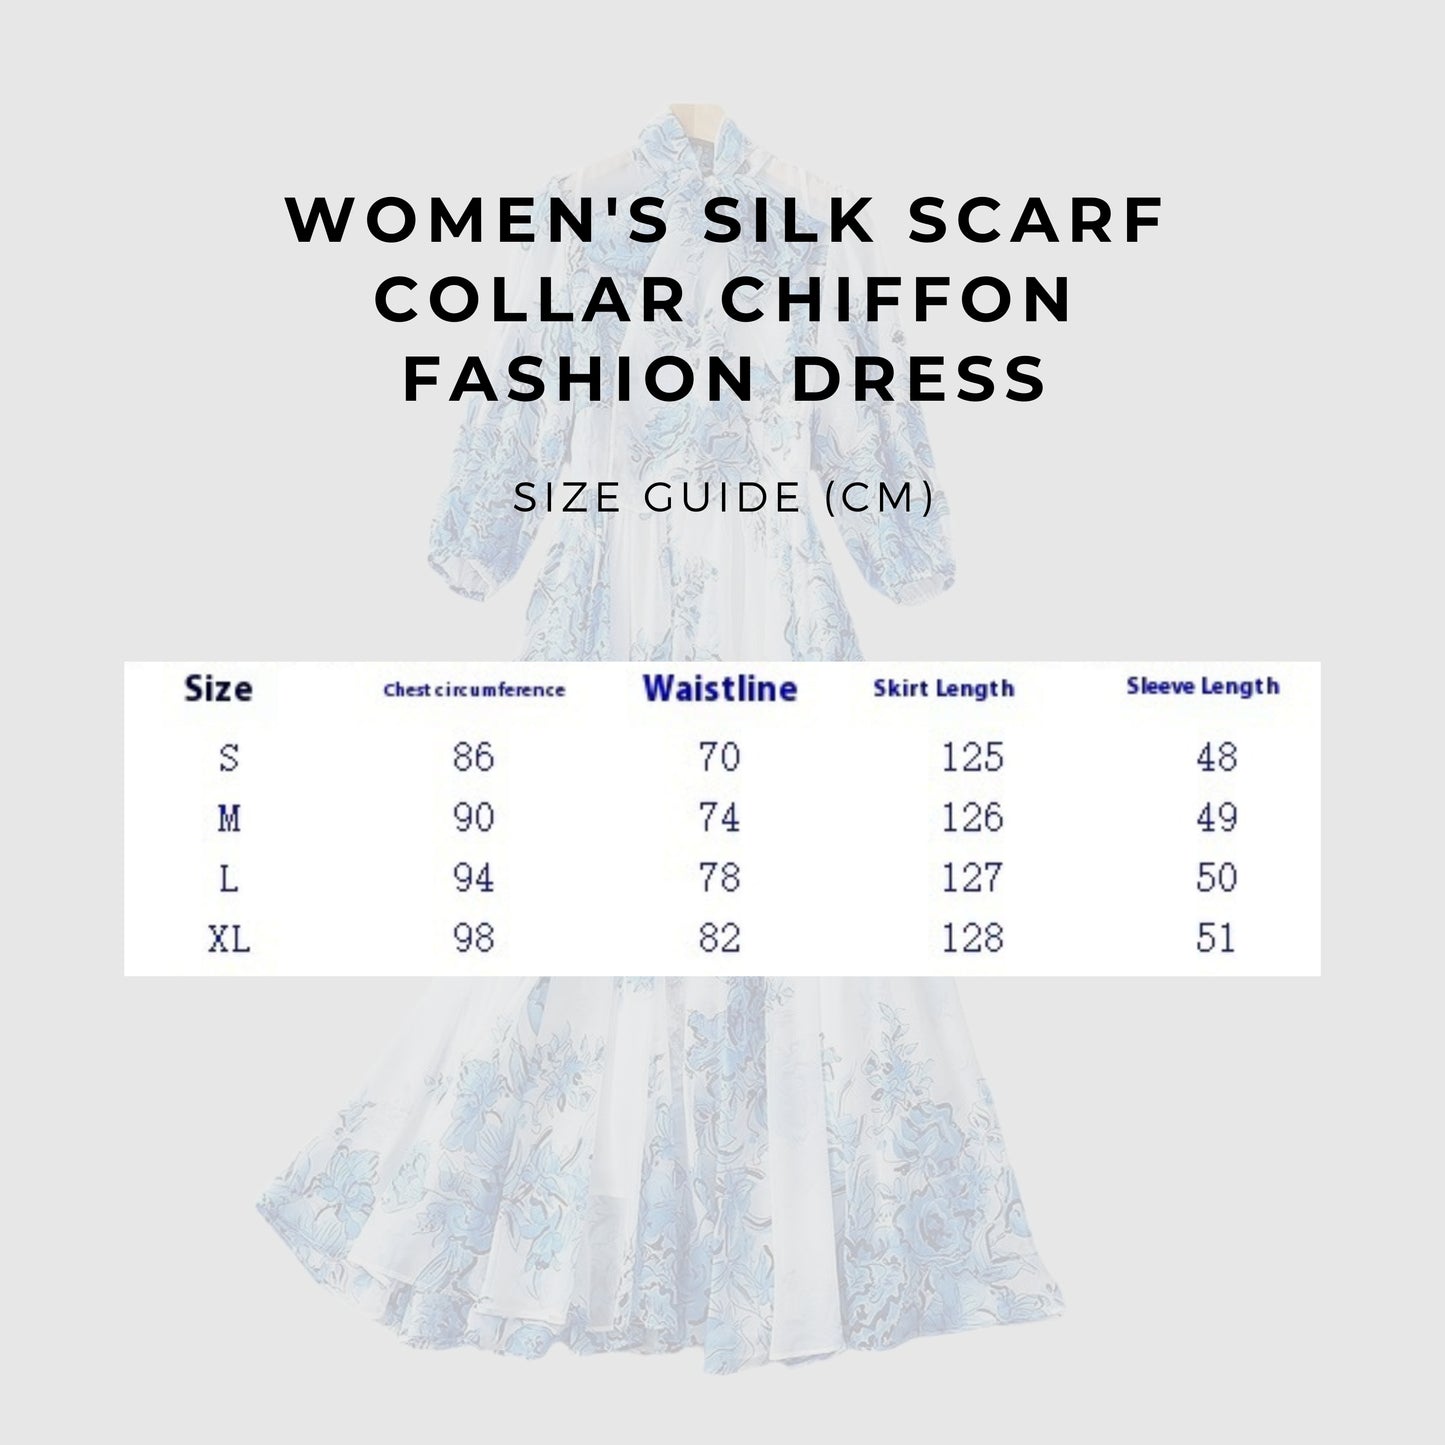 Women's Silk Scarf Collar Chiffon Fashion Dress